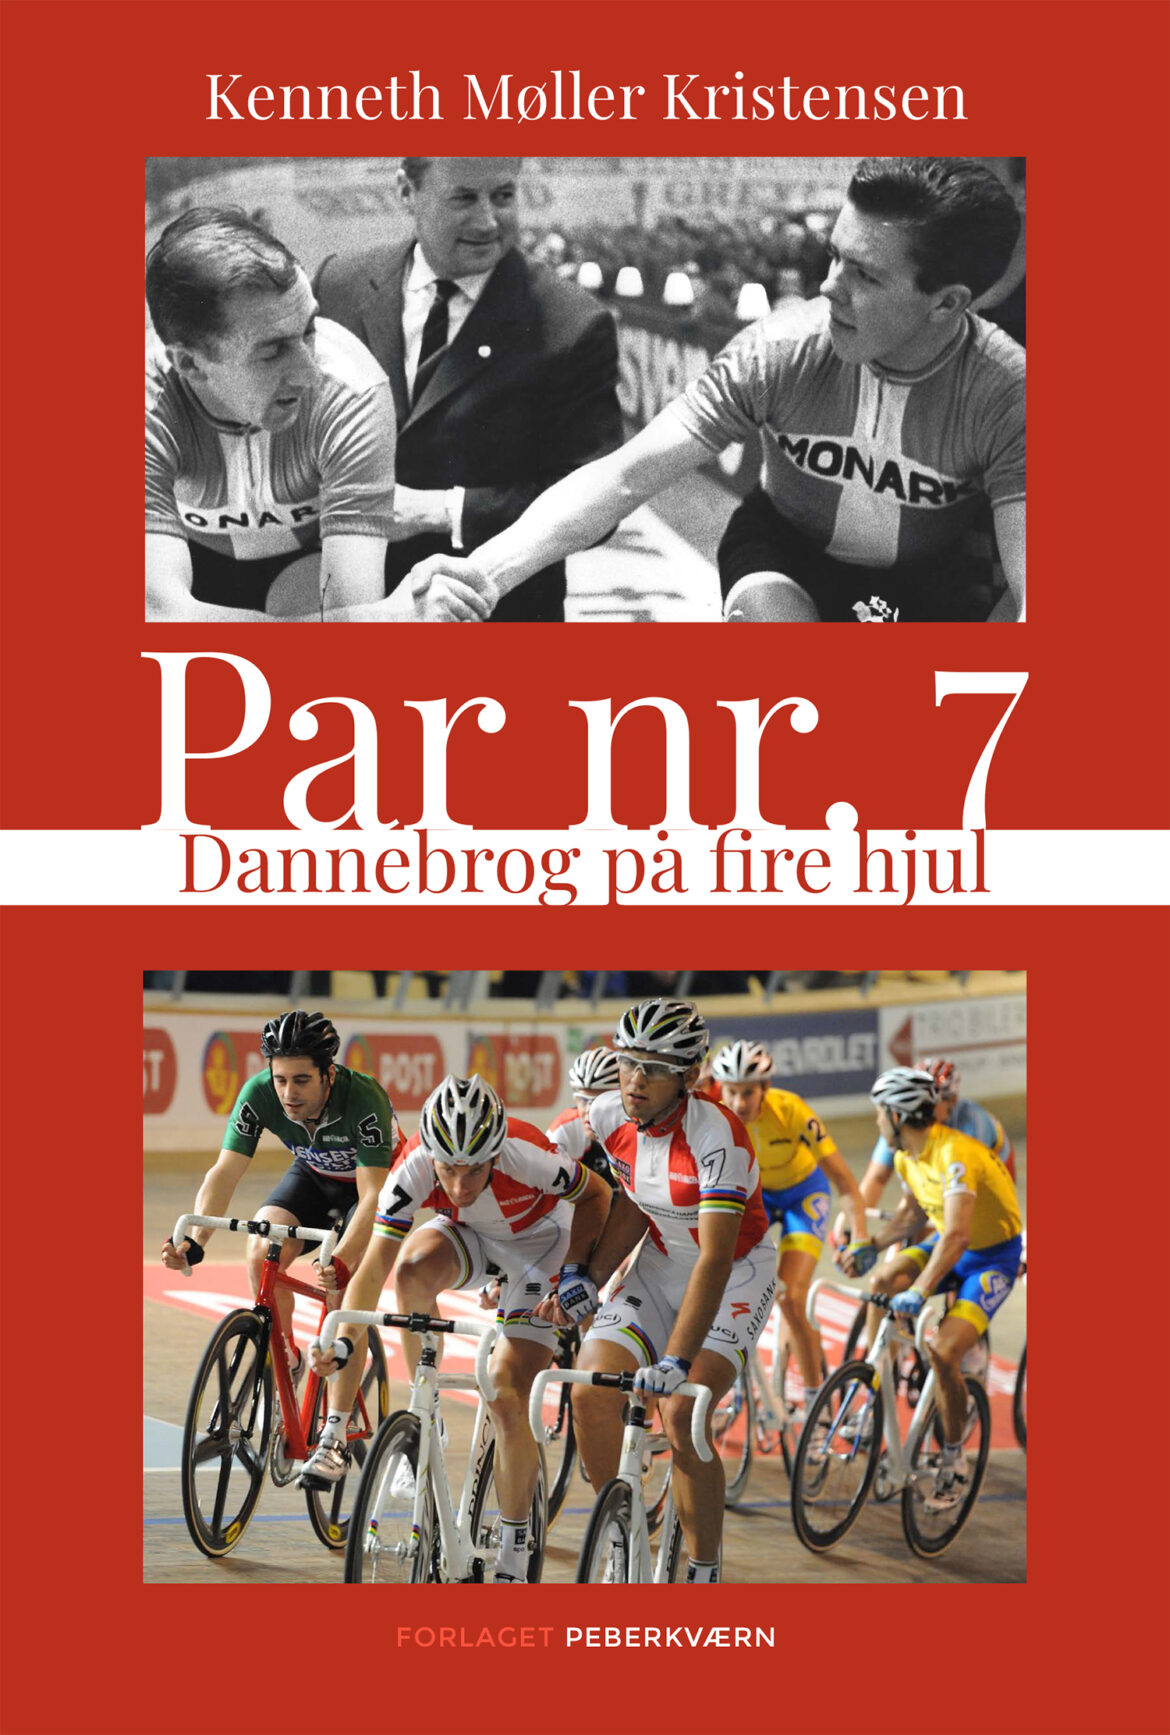 Bog om Par nr. 7 er oplagt læsestof for fans af cykelsport